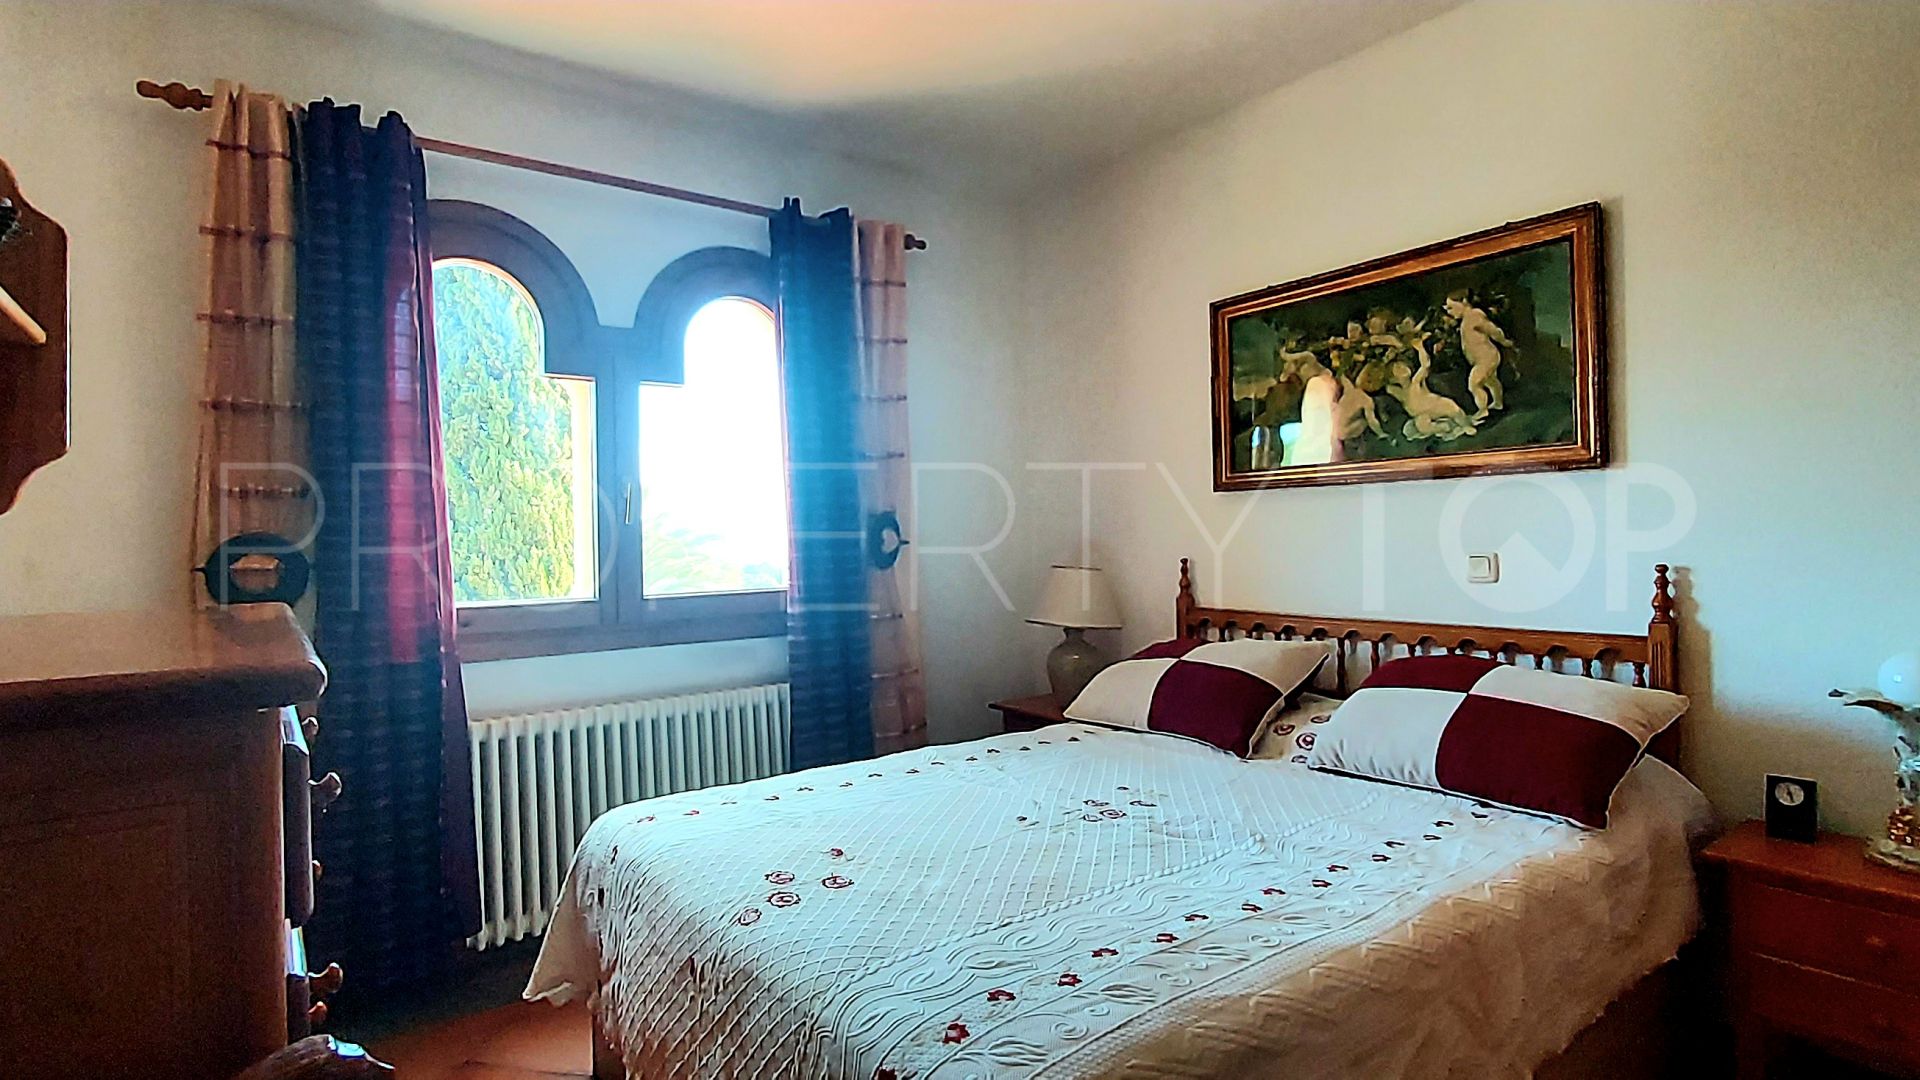 8 bedrooms villa in Benissa Costa for sale